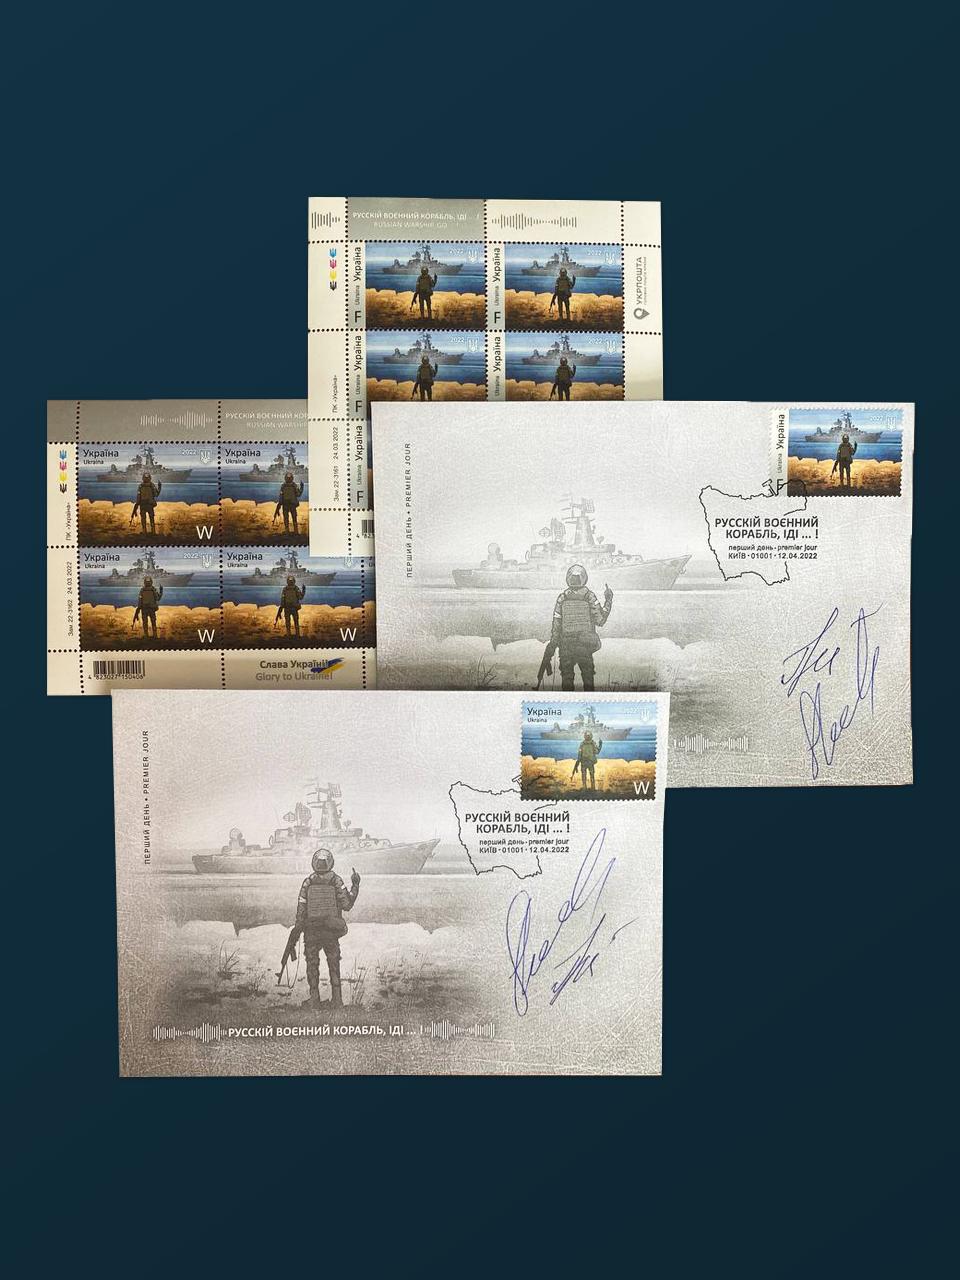 На аукцион выставили почтовые марки «Русский военный корабль, иди…!» и конверты со спецпогашением с подписями автора легендарной фразы. Стартовая цена — 25 тыс. грн